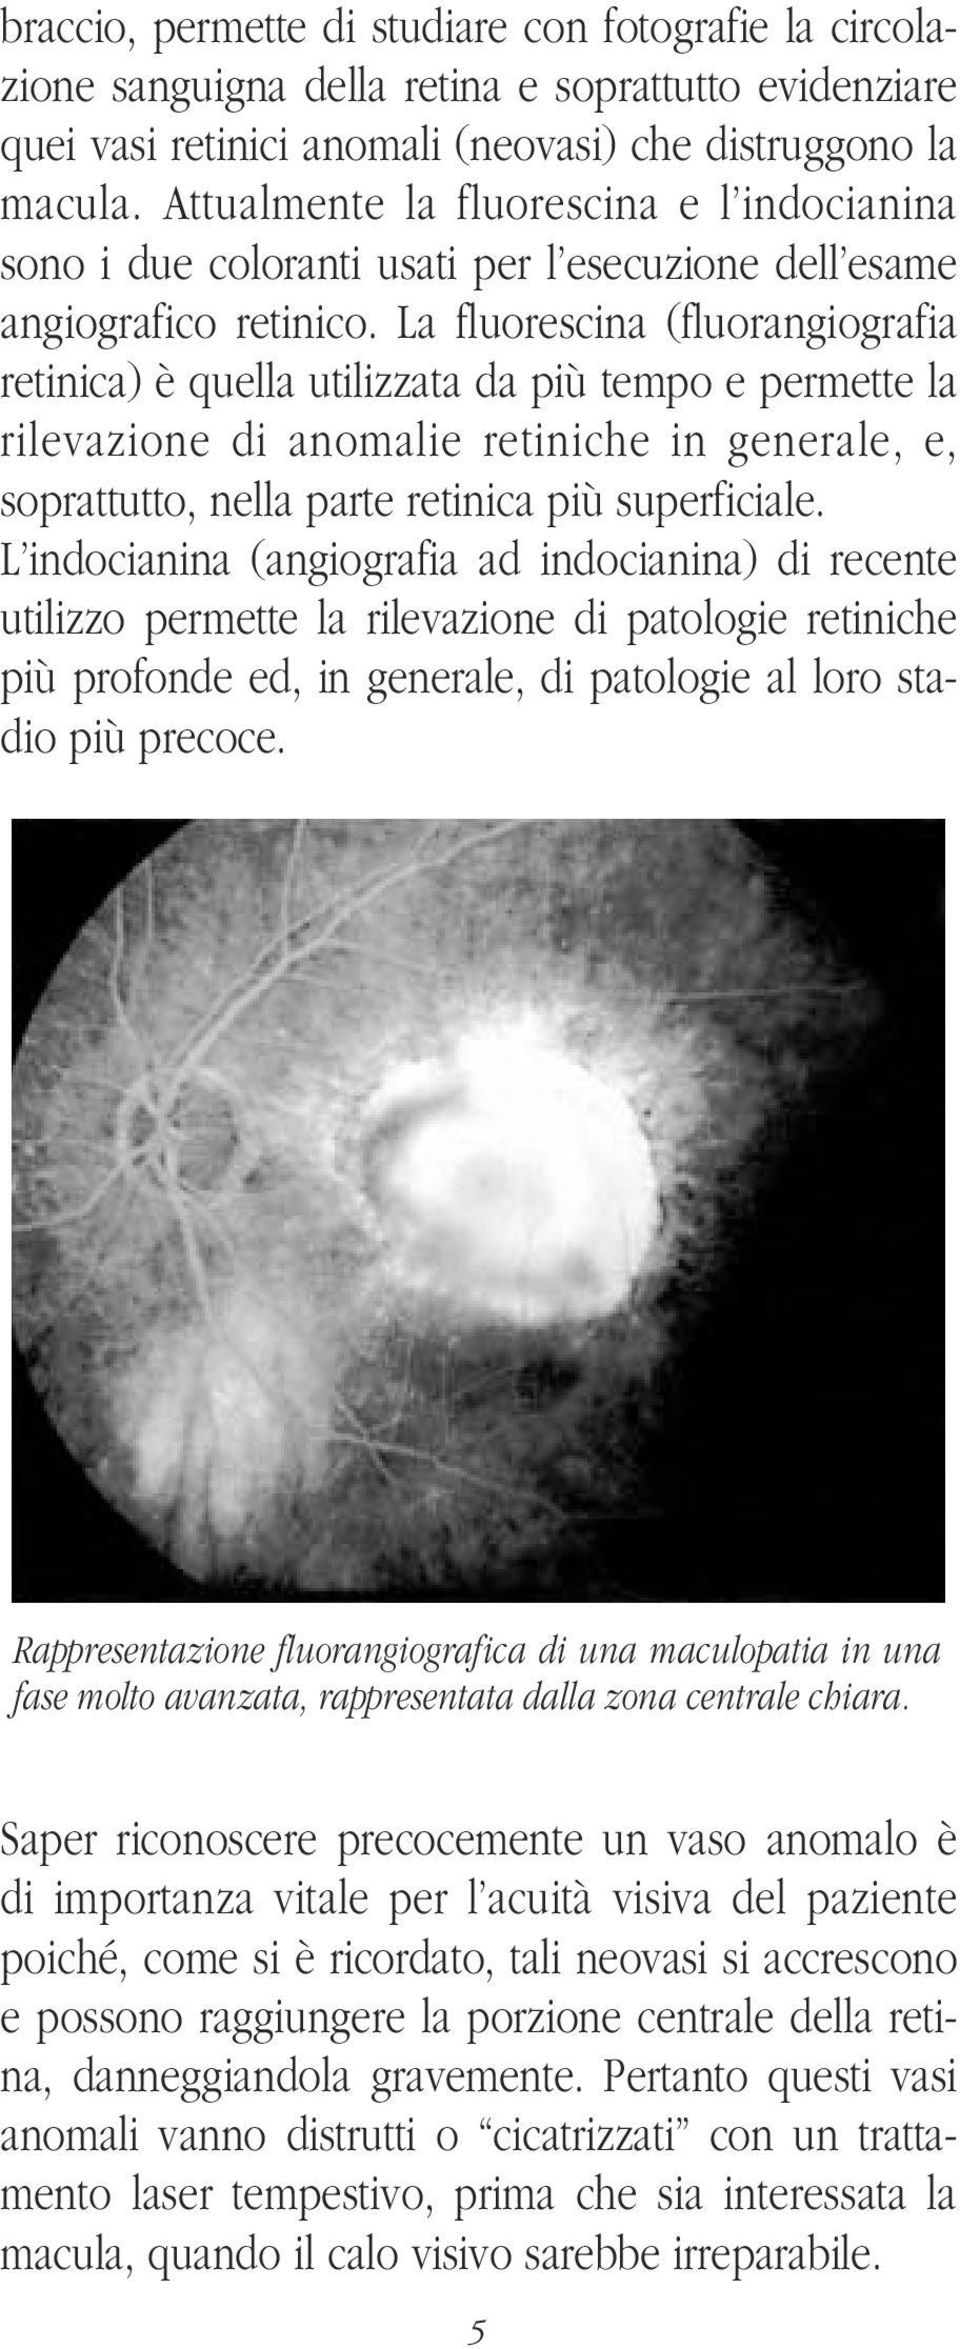 La fluorescina (fluorangiografia retinica) è quella utilizzata da più tempo e permette la rilevazione di anomalie retiniche in generale, e, soprattutto, nella parte retinica più superficiale.